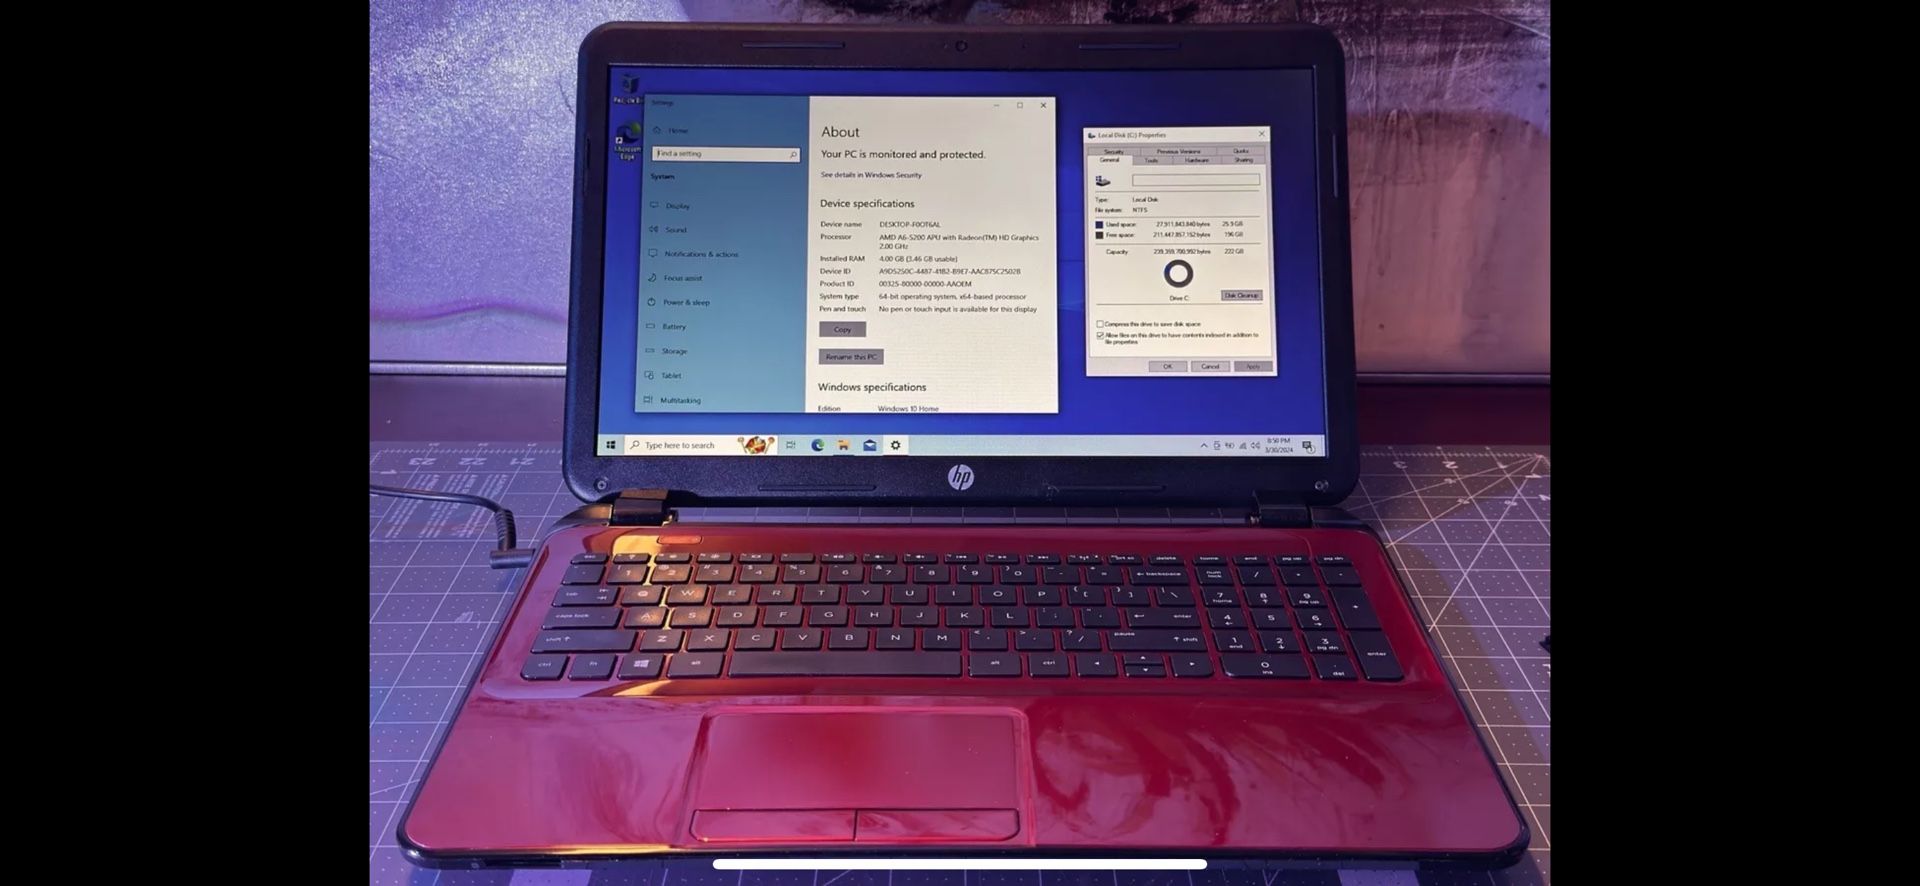 HP 15 Inch Laptop - AMD Quad-Core A6-5200, 2 GHz, Radeon HD 8400 GPU, 4 Gig Ram